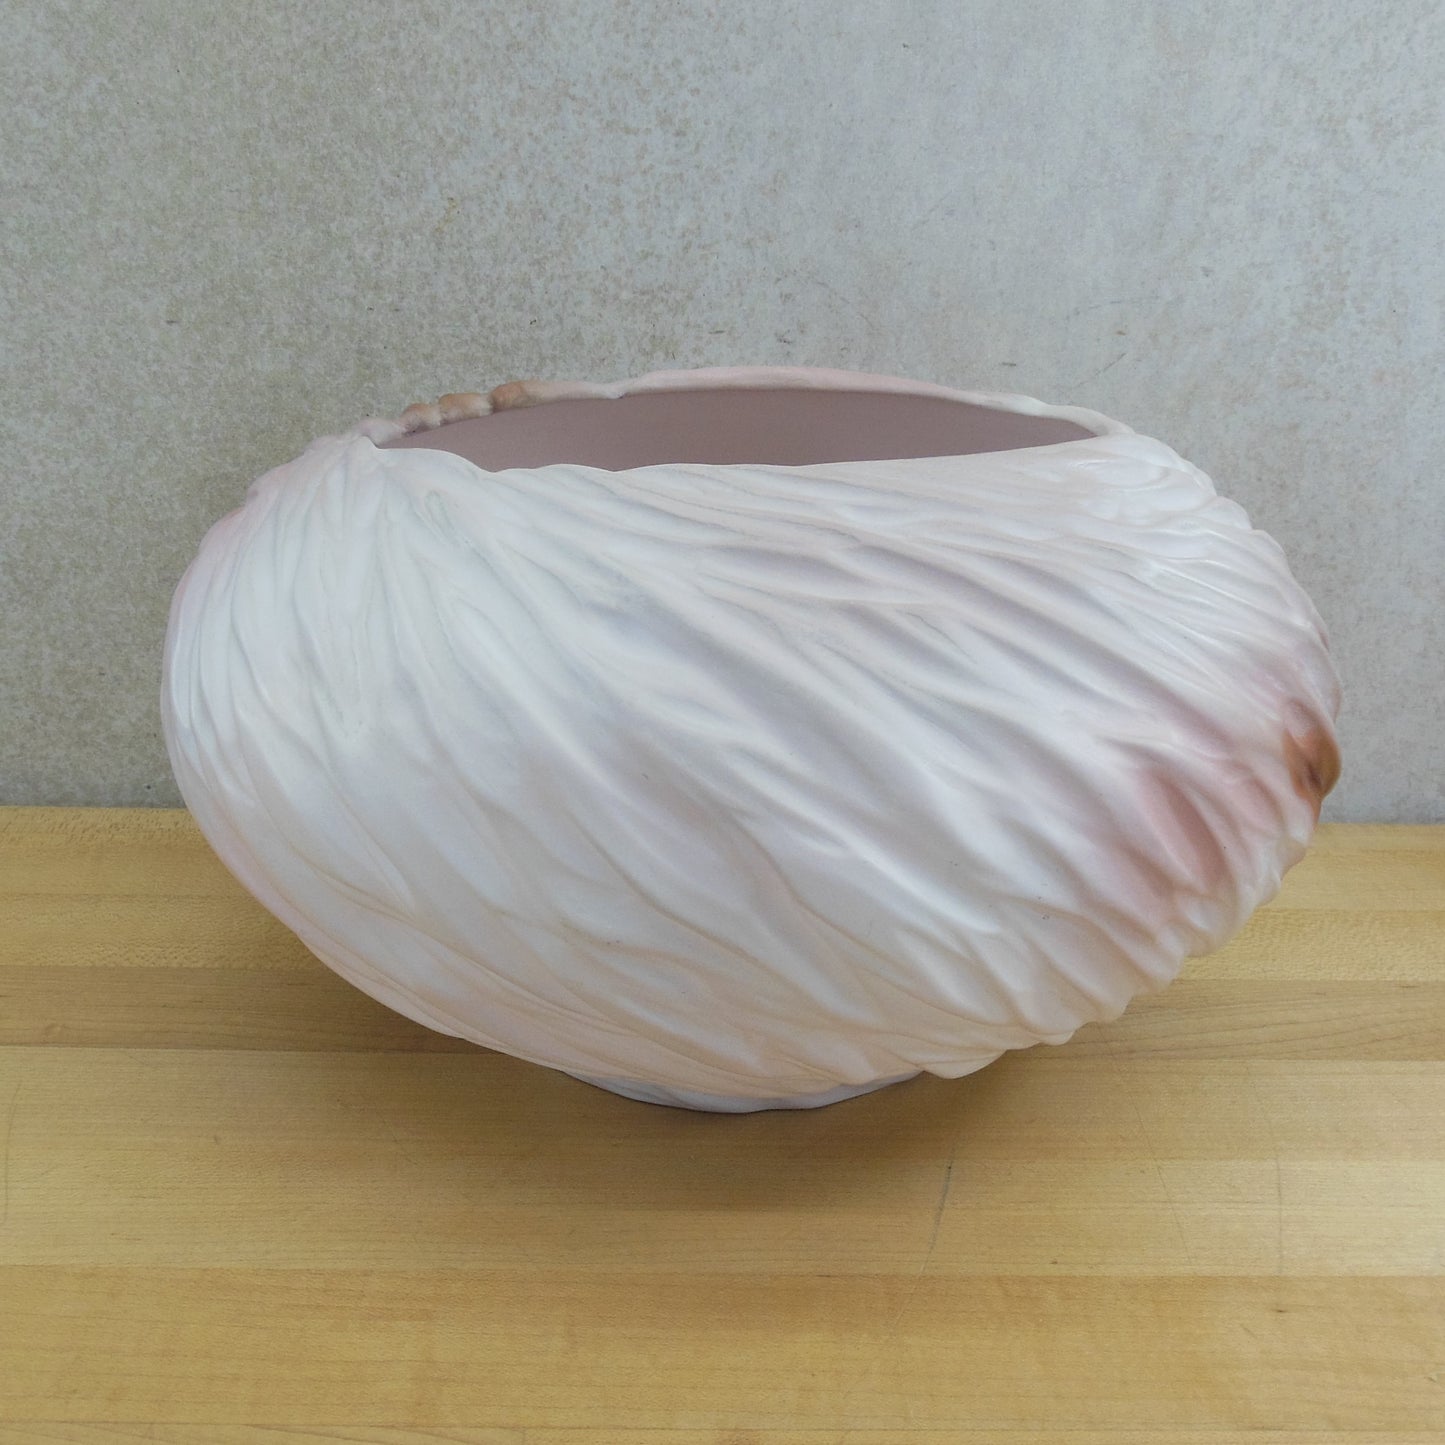 Ruth Allan 1990 Studio Saggar Pottery Vortex Vase Pink Brown White